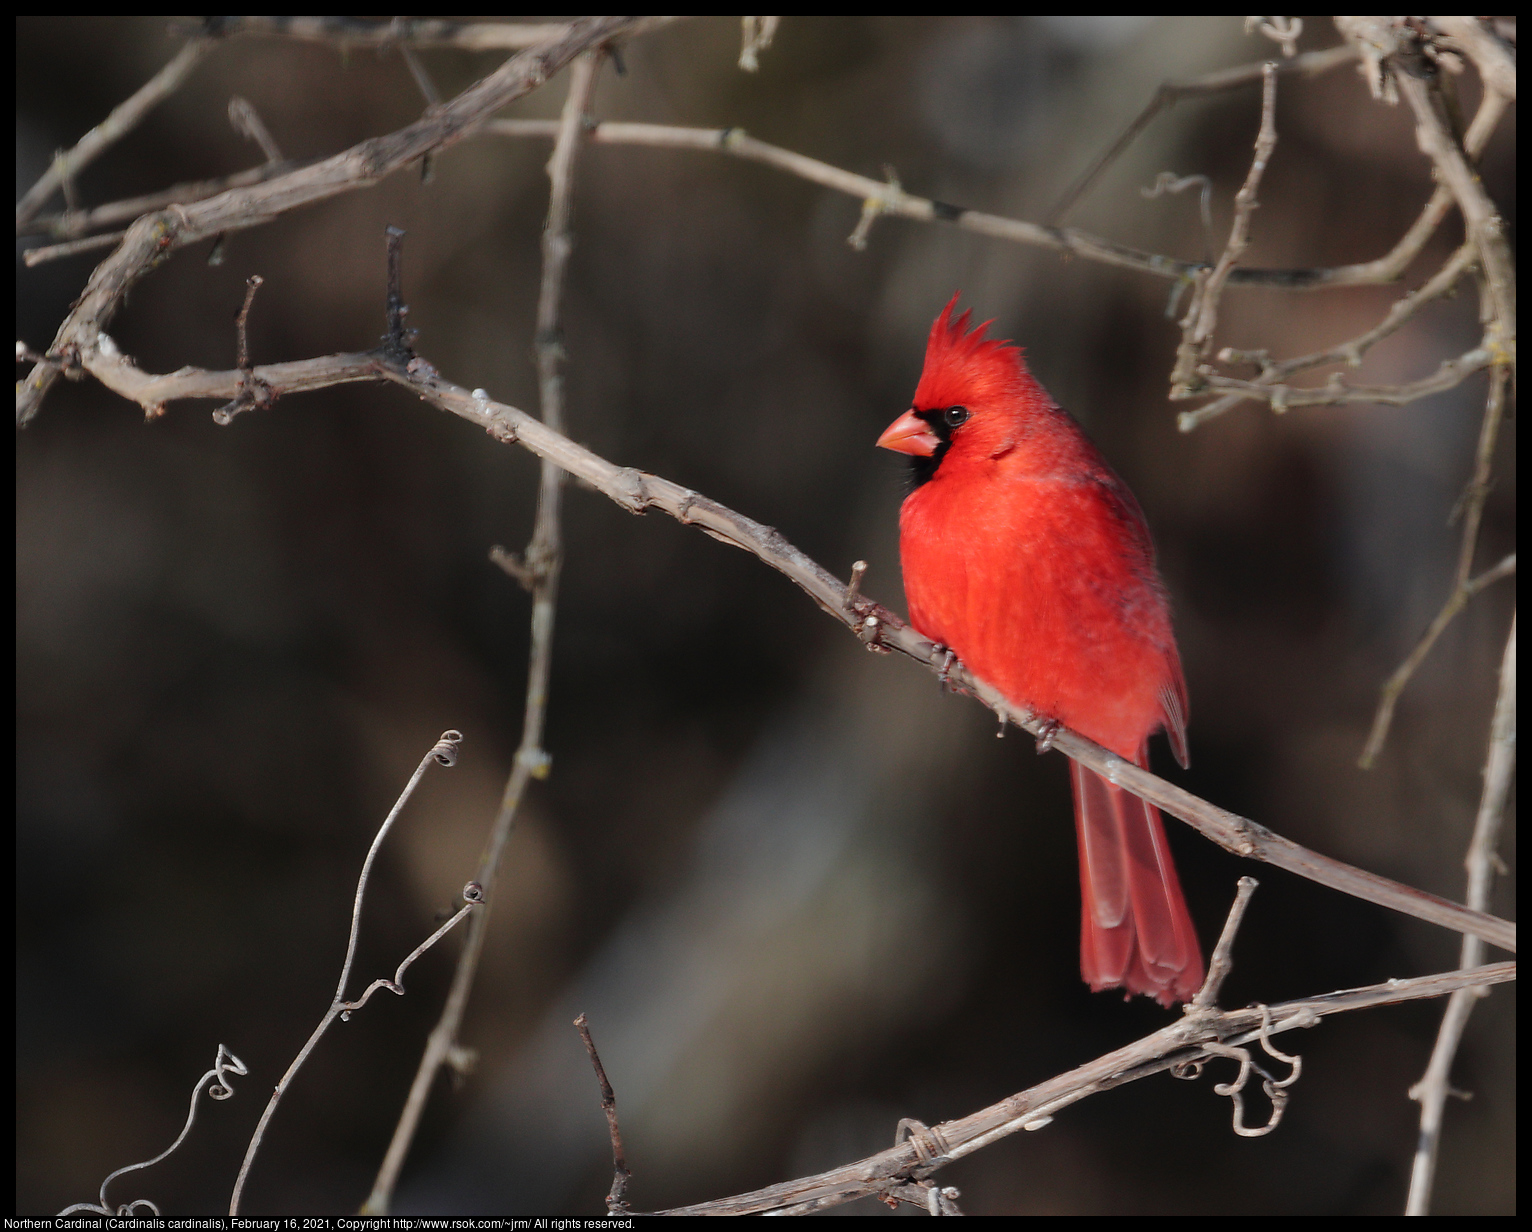 Northern Cardinal (Cardinalis cardinalis), February 16, 2021